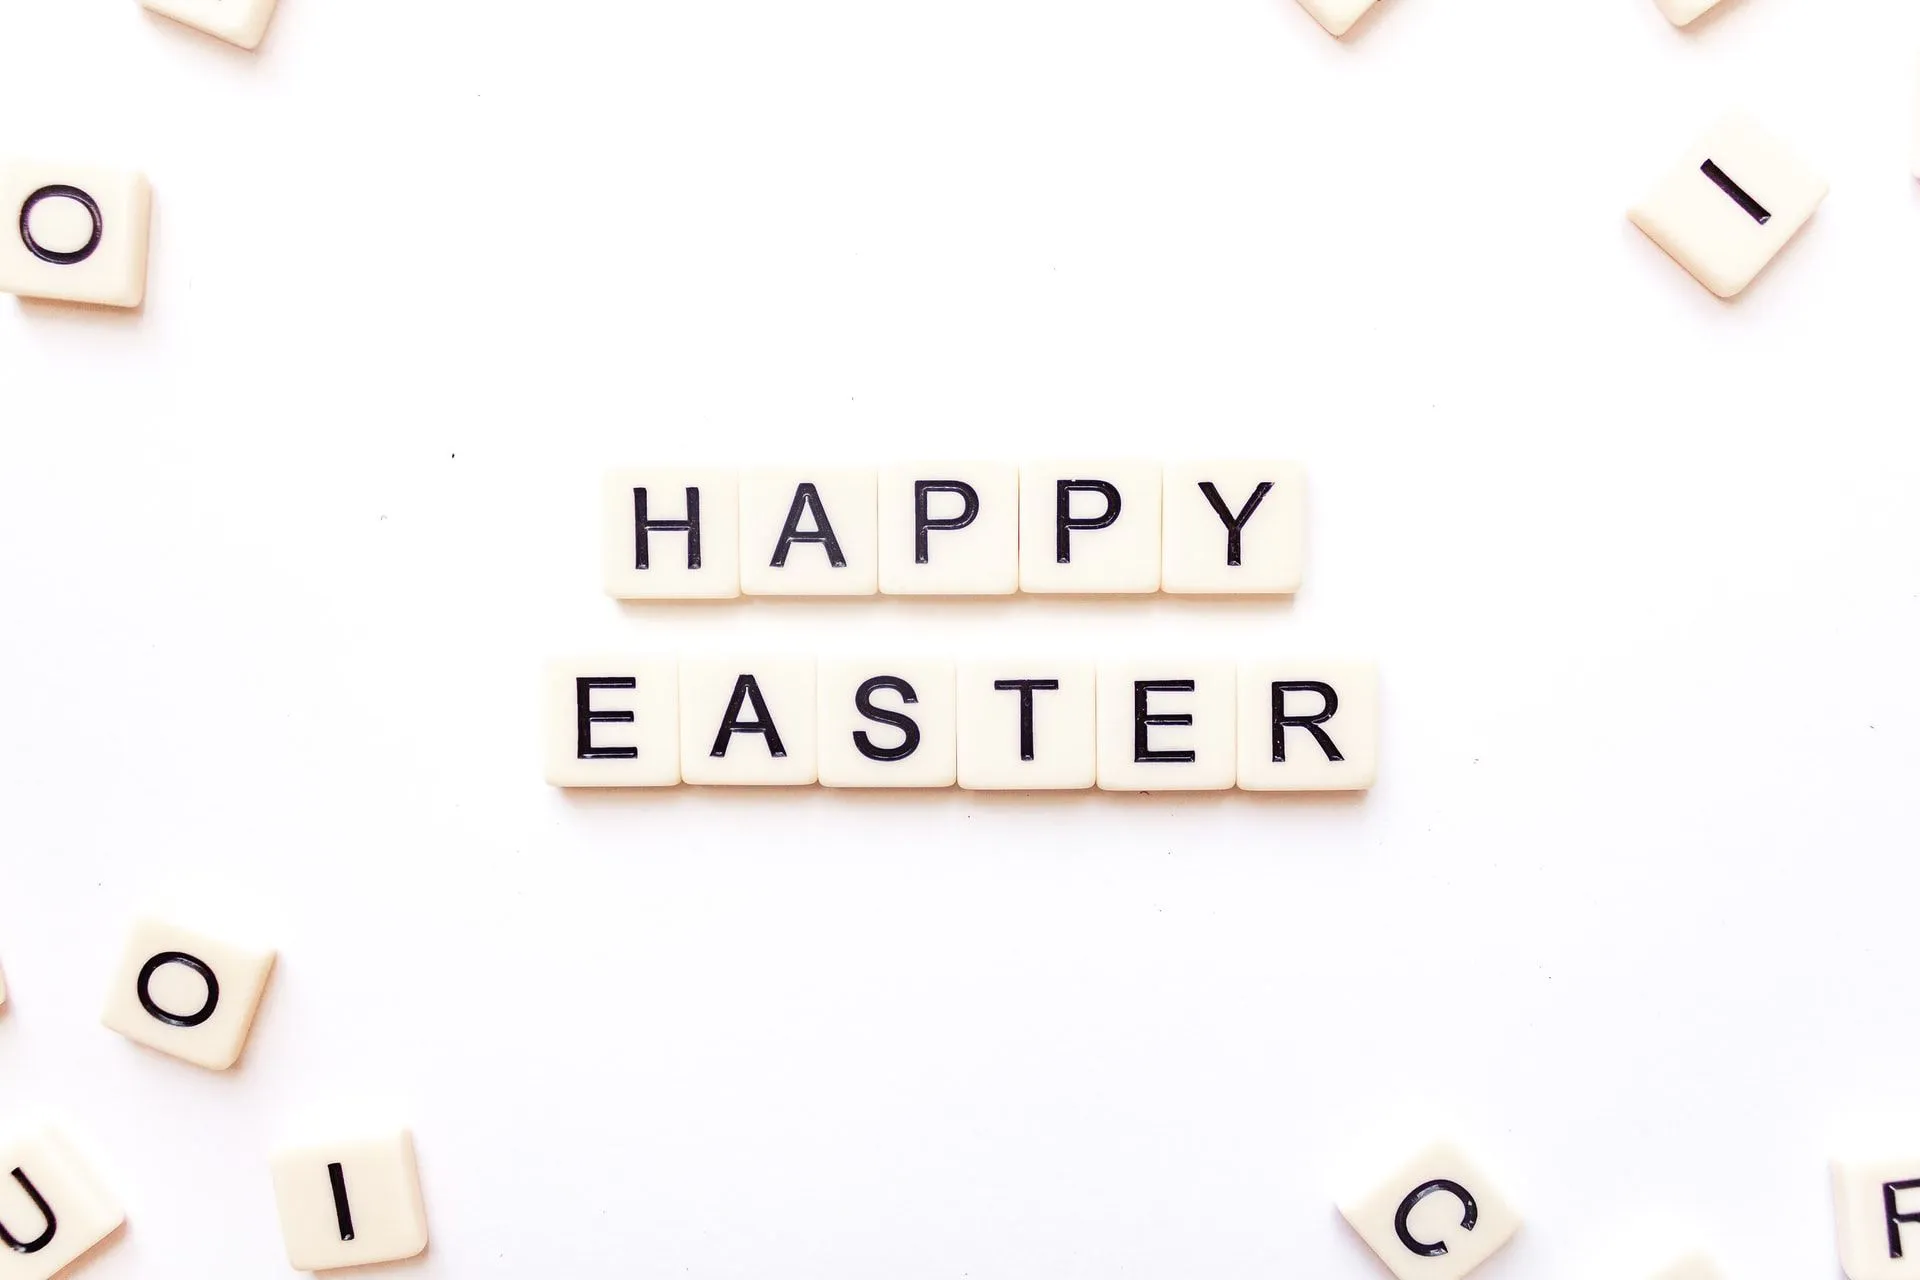 Easter jokes are egg-cellent for all kids.